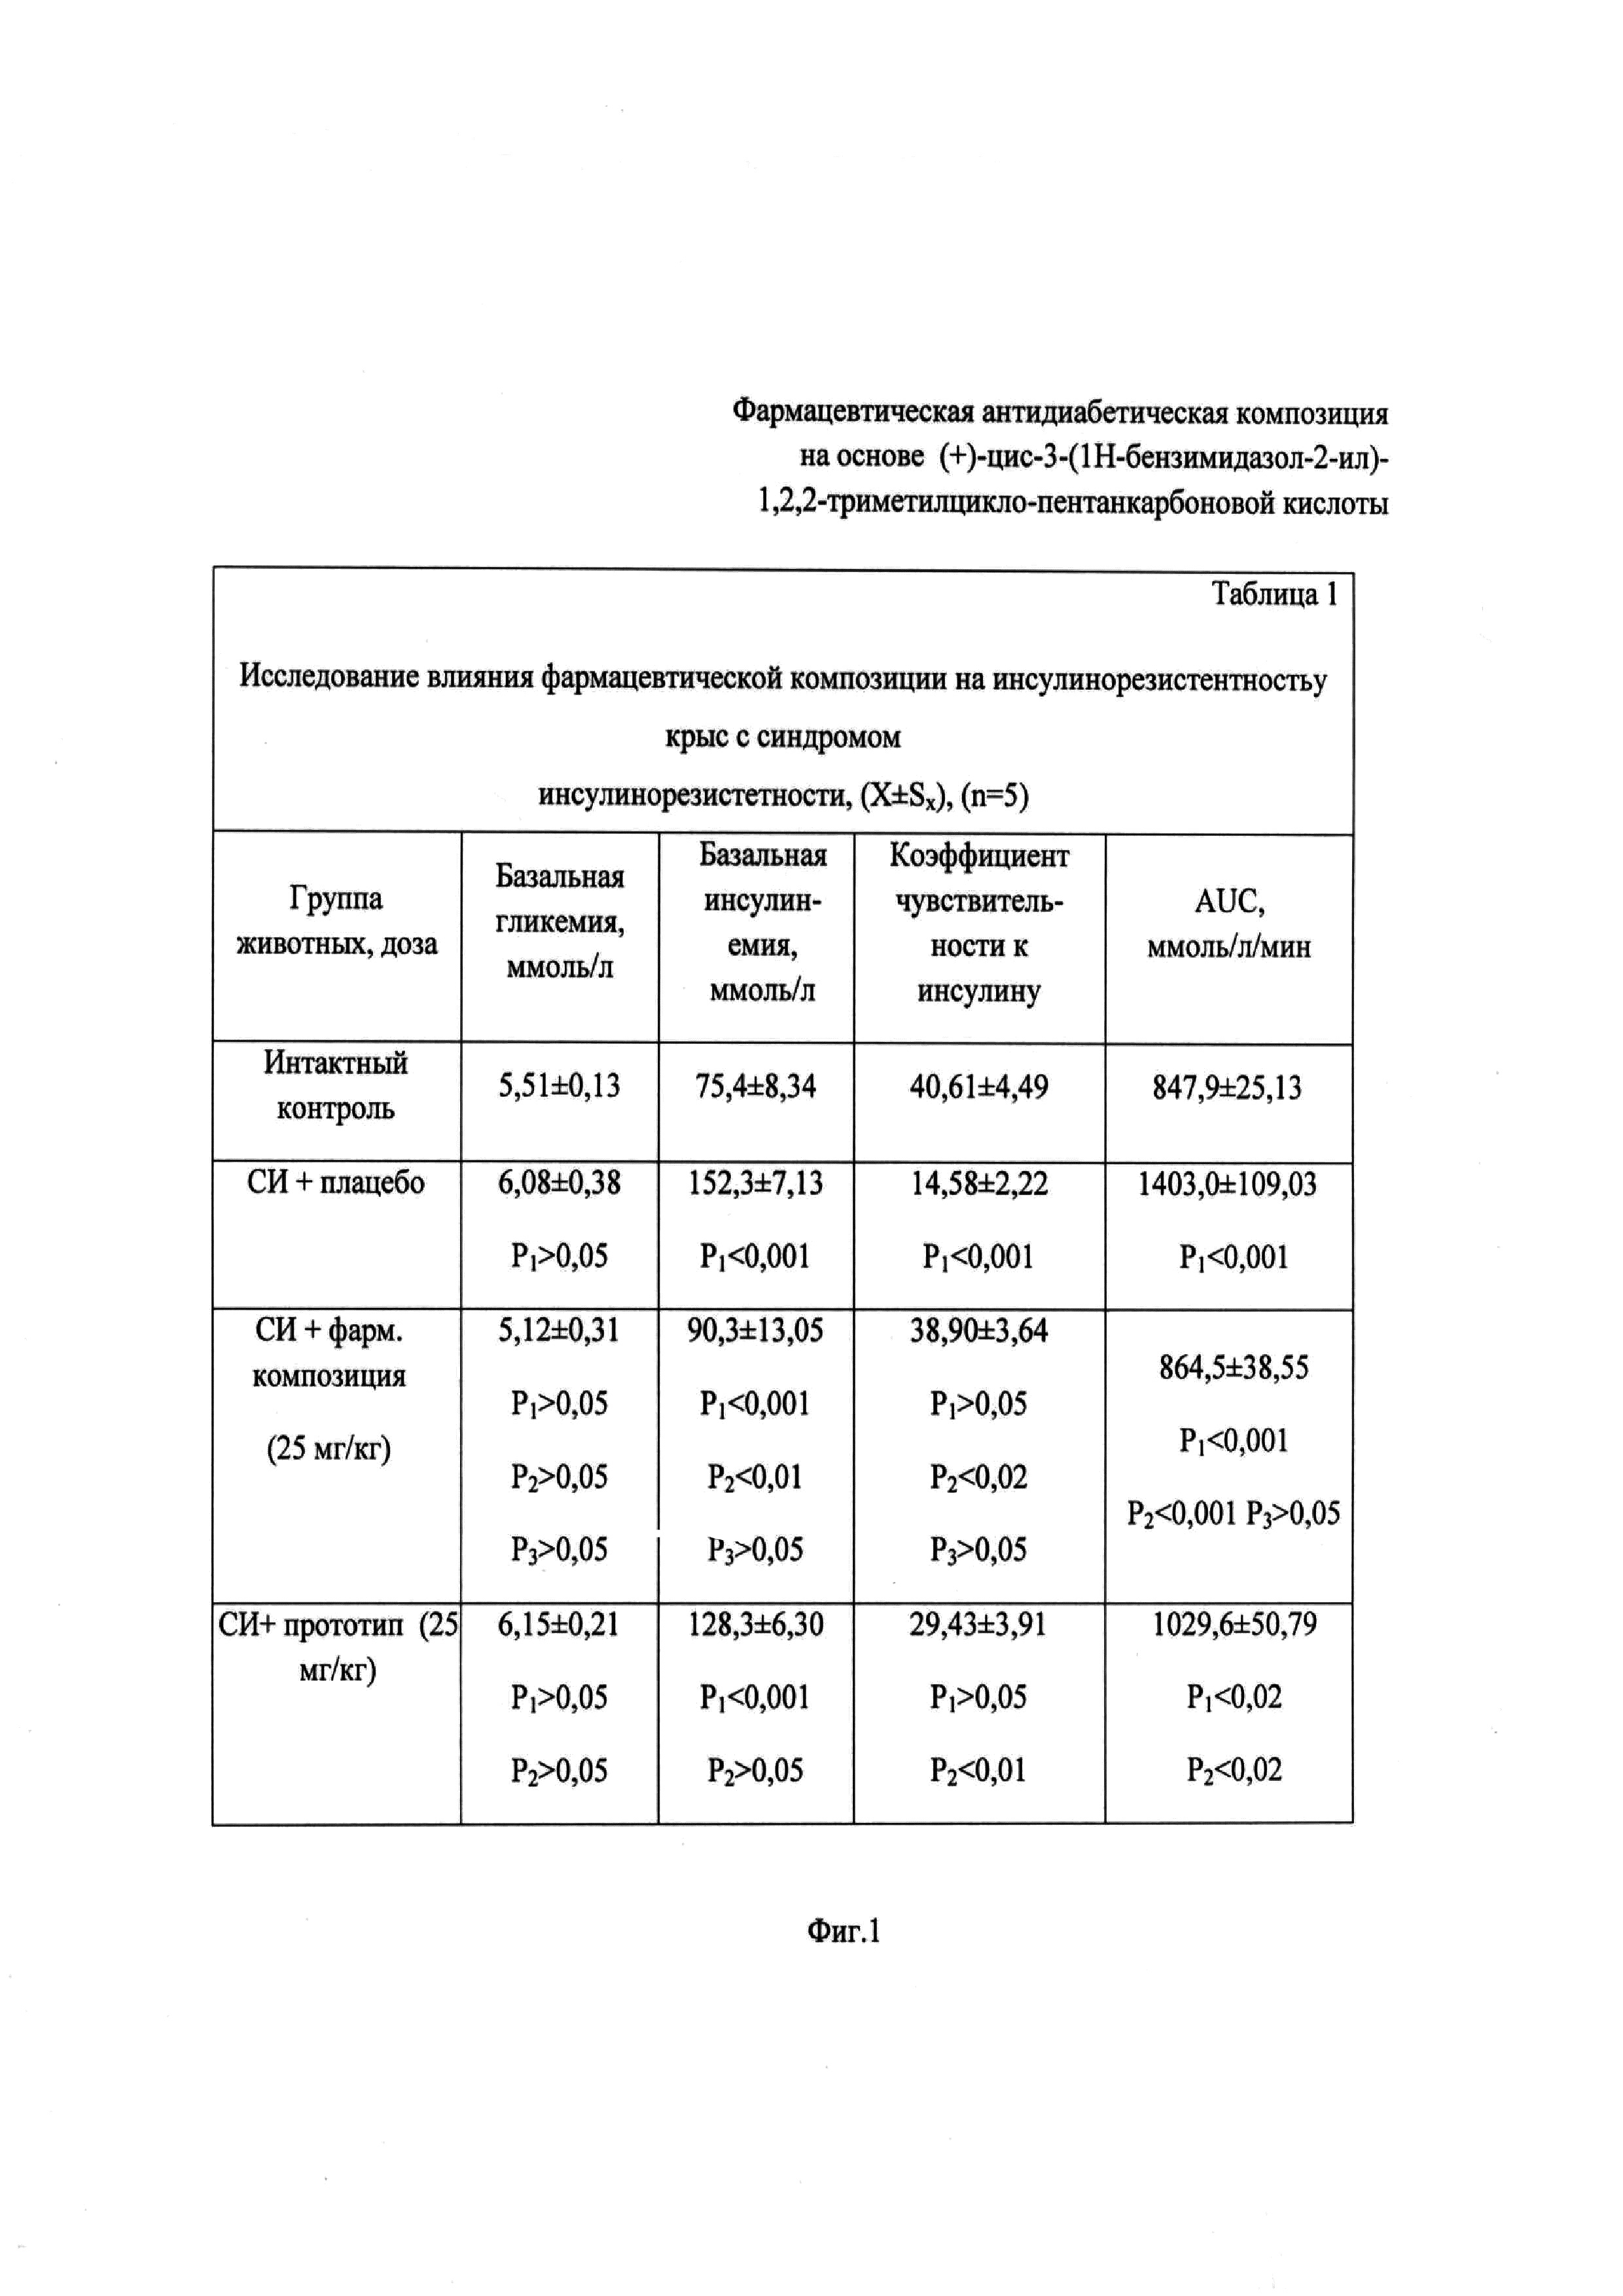 Фармацевтическая антидиабетическая композиция на основе (+)-цис-3-(1Н-бензимидазол-2-ил)-1,2,2-триметилциклопентанкарбоновой кислоты